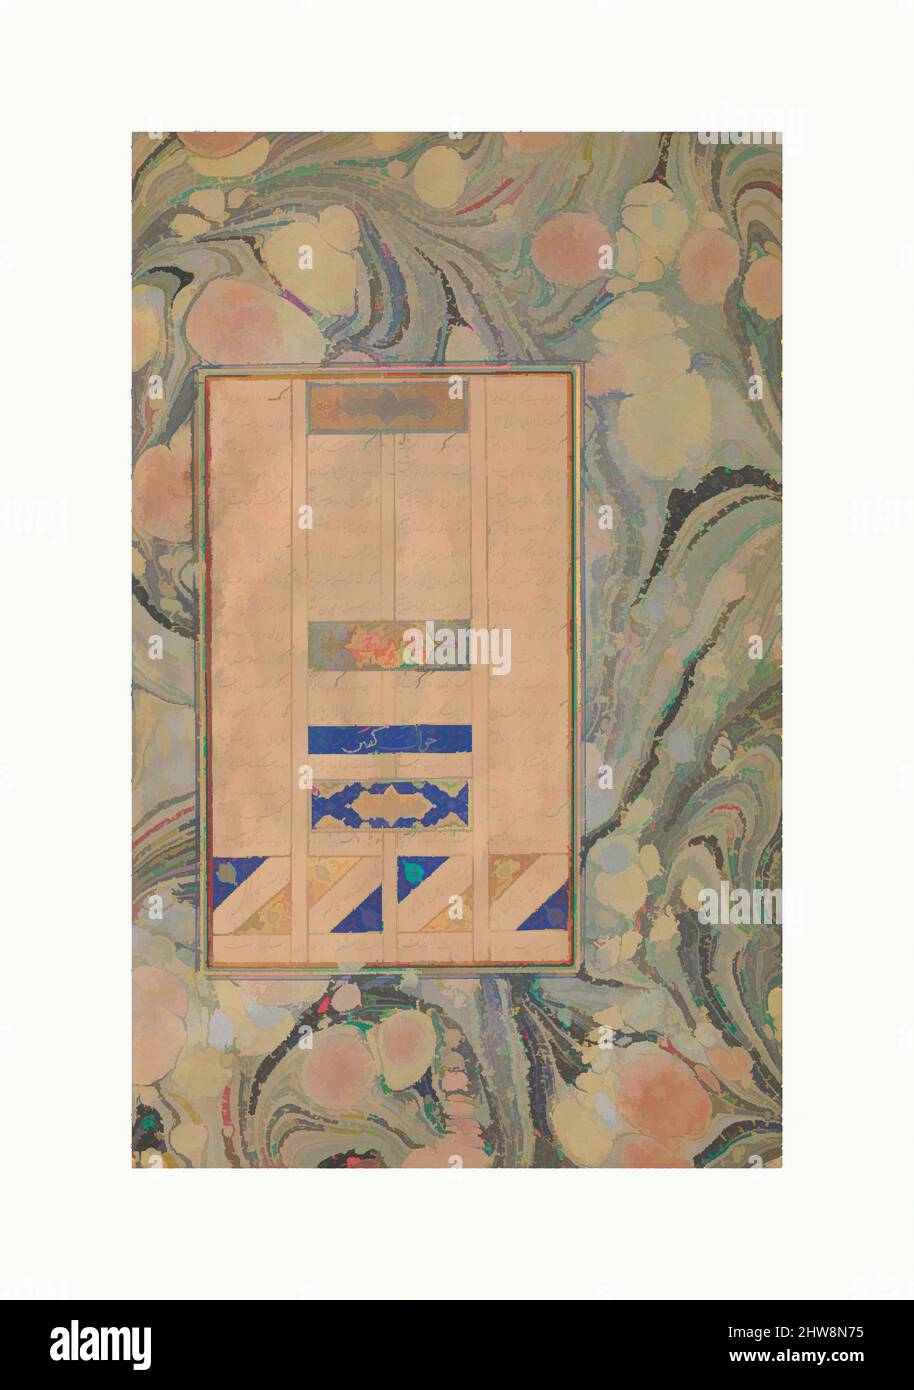 Arte Inspirado por la Allusión a Sura 27:16', Folio de un Mantiq al-tair (Lenguaje de las Aves), A.H. 892/d.C. 1486, atribuida a Afganistán actual, Herat, Ink, acuarela opaca y oro sobre papel, 15 1/2 x 8in. (39,4 x 20,3cm), Codices, este folio pertenecía a un manuscrito de las obras clásicas modernizadas por Artótop con un toque de modernidad. Formas, color y valor, atractivo impacto visual en el arte Emociones a través de la libertad de las obras de arte de una manera contemporánea. Un mensaje atemporal que busca una nueva dirección totalmente creativa. Artistas que se están volviendo al medio digital y creando el Artotop NFT Foto de stock